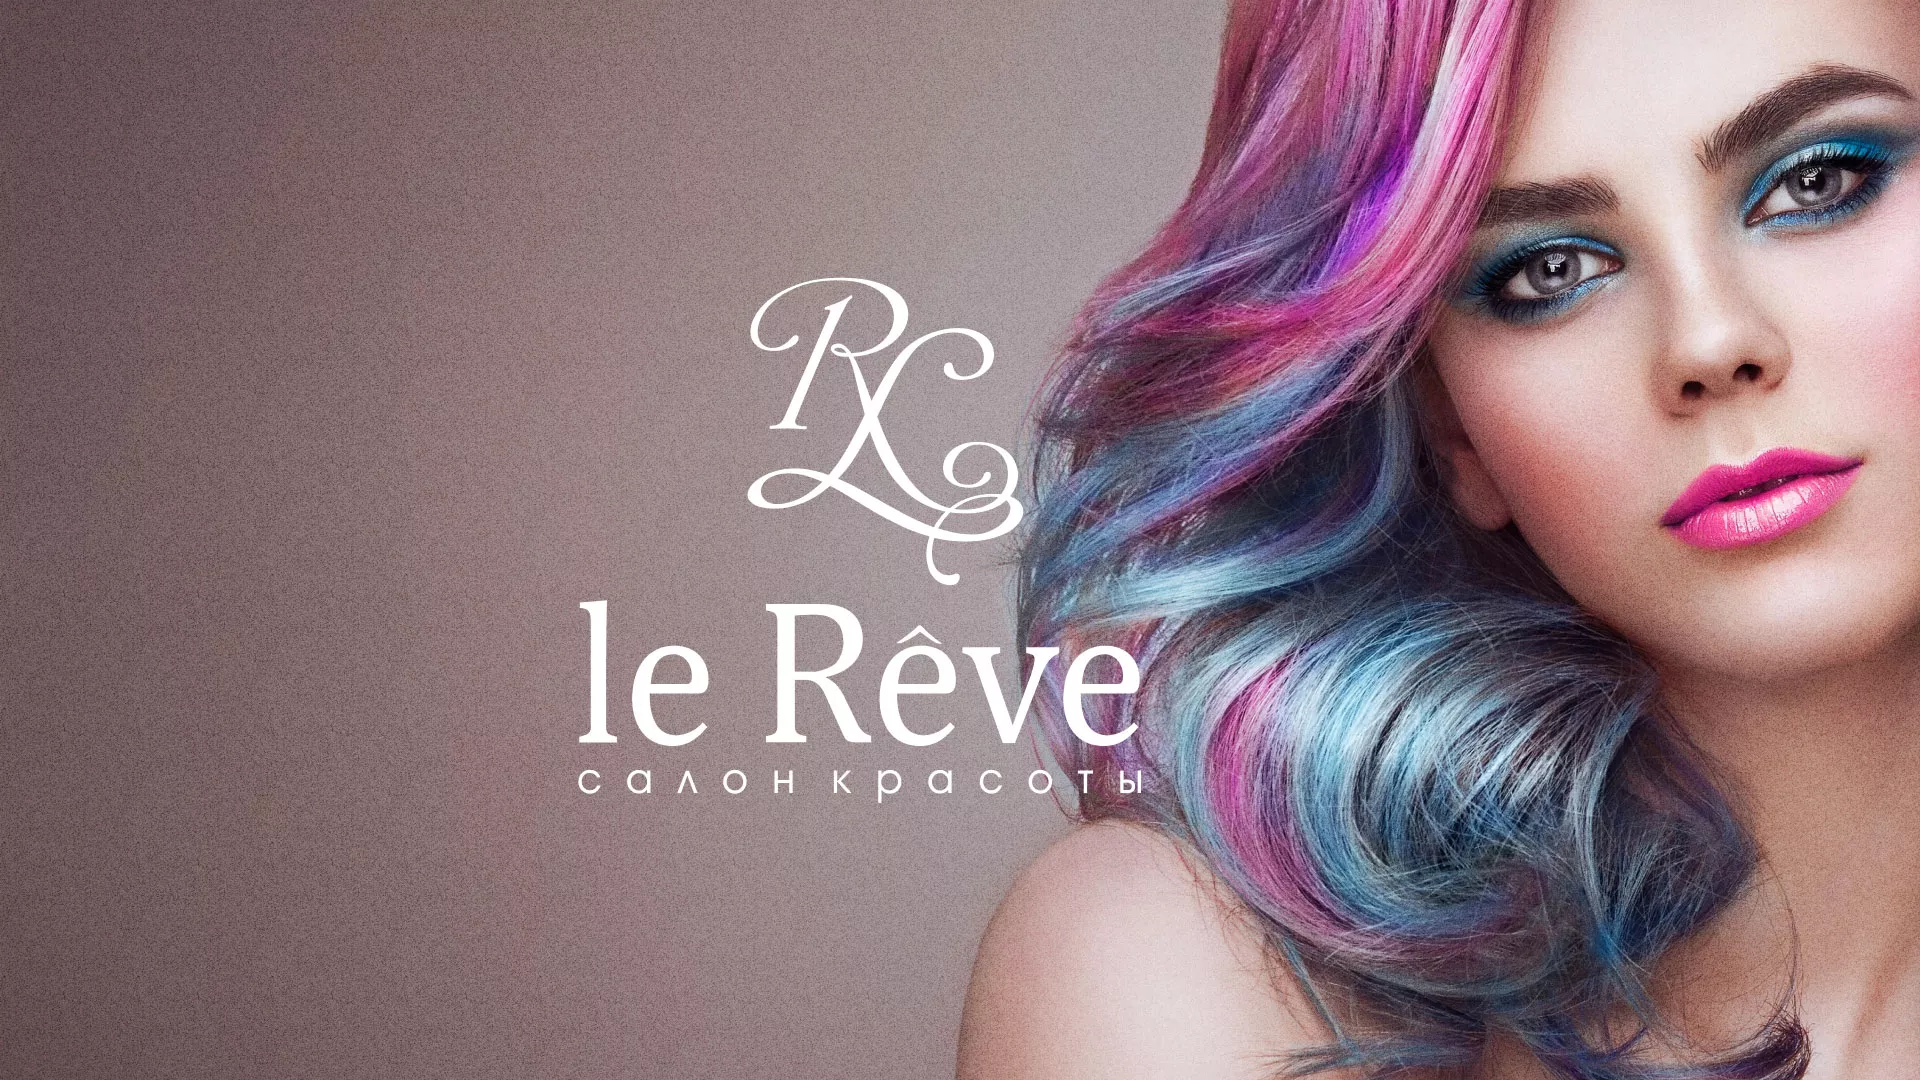 Создание сайта для салона красоты «Le Reve» в Могоче